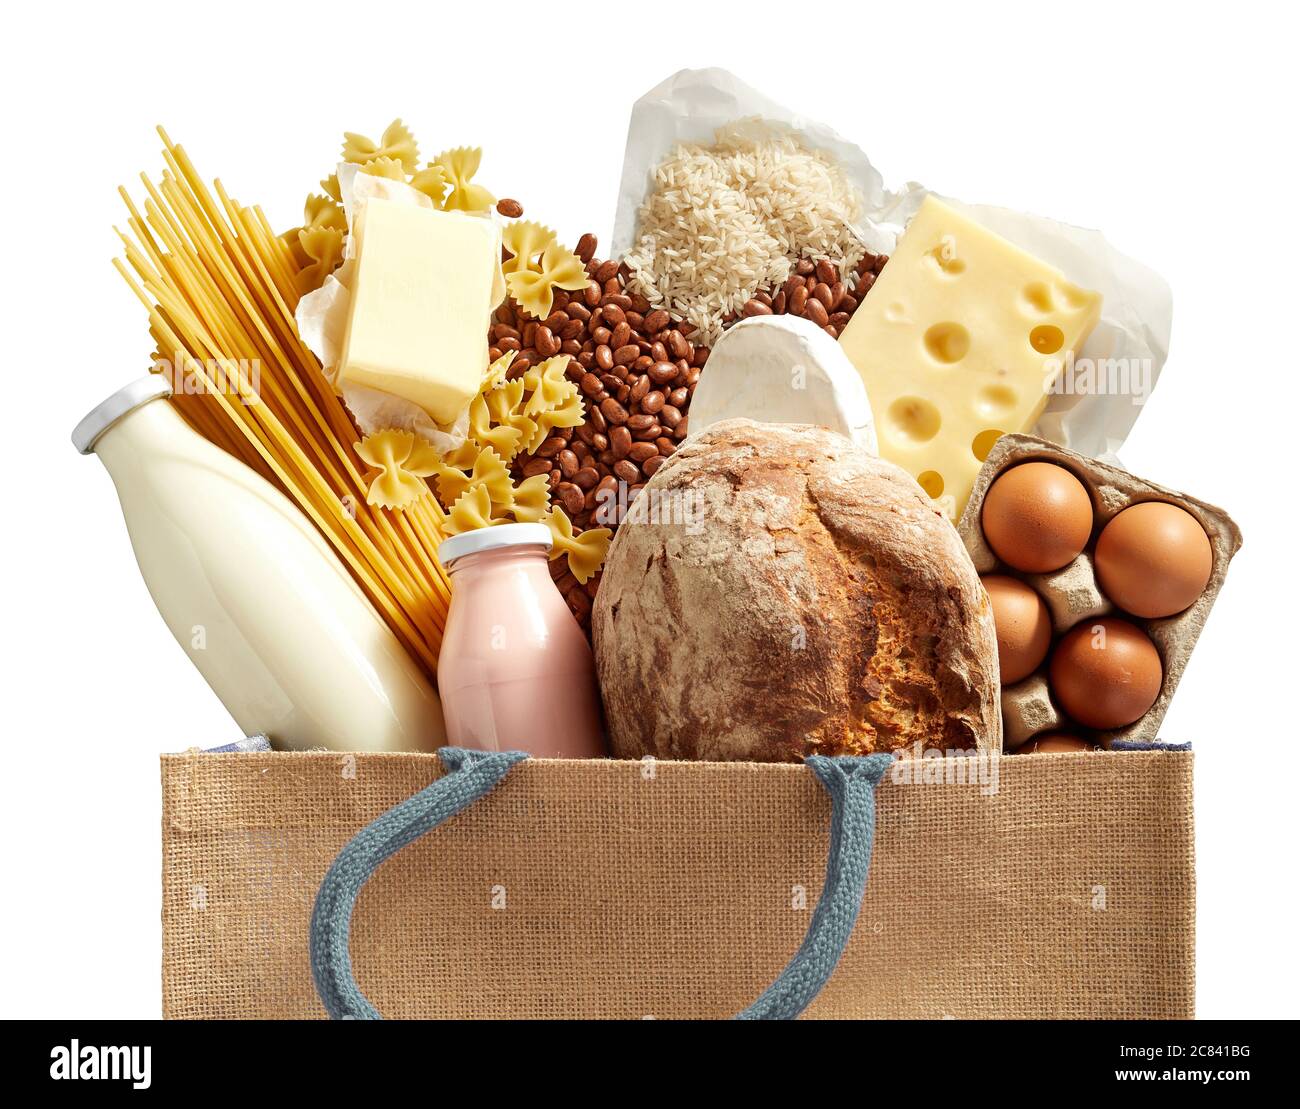 Primo piano su generi alimentari freschi in una borsa riutilizzabile con prodotti caseari freschi e carboidrati, tra cui formaggio, pasta, baguette, fagioli, uova e Foto Stock